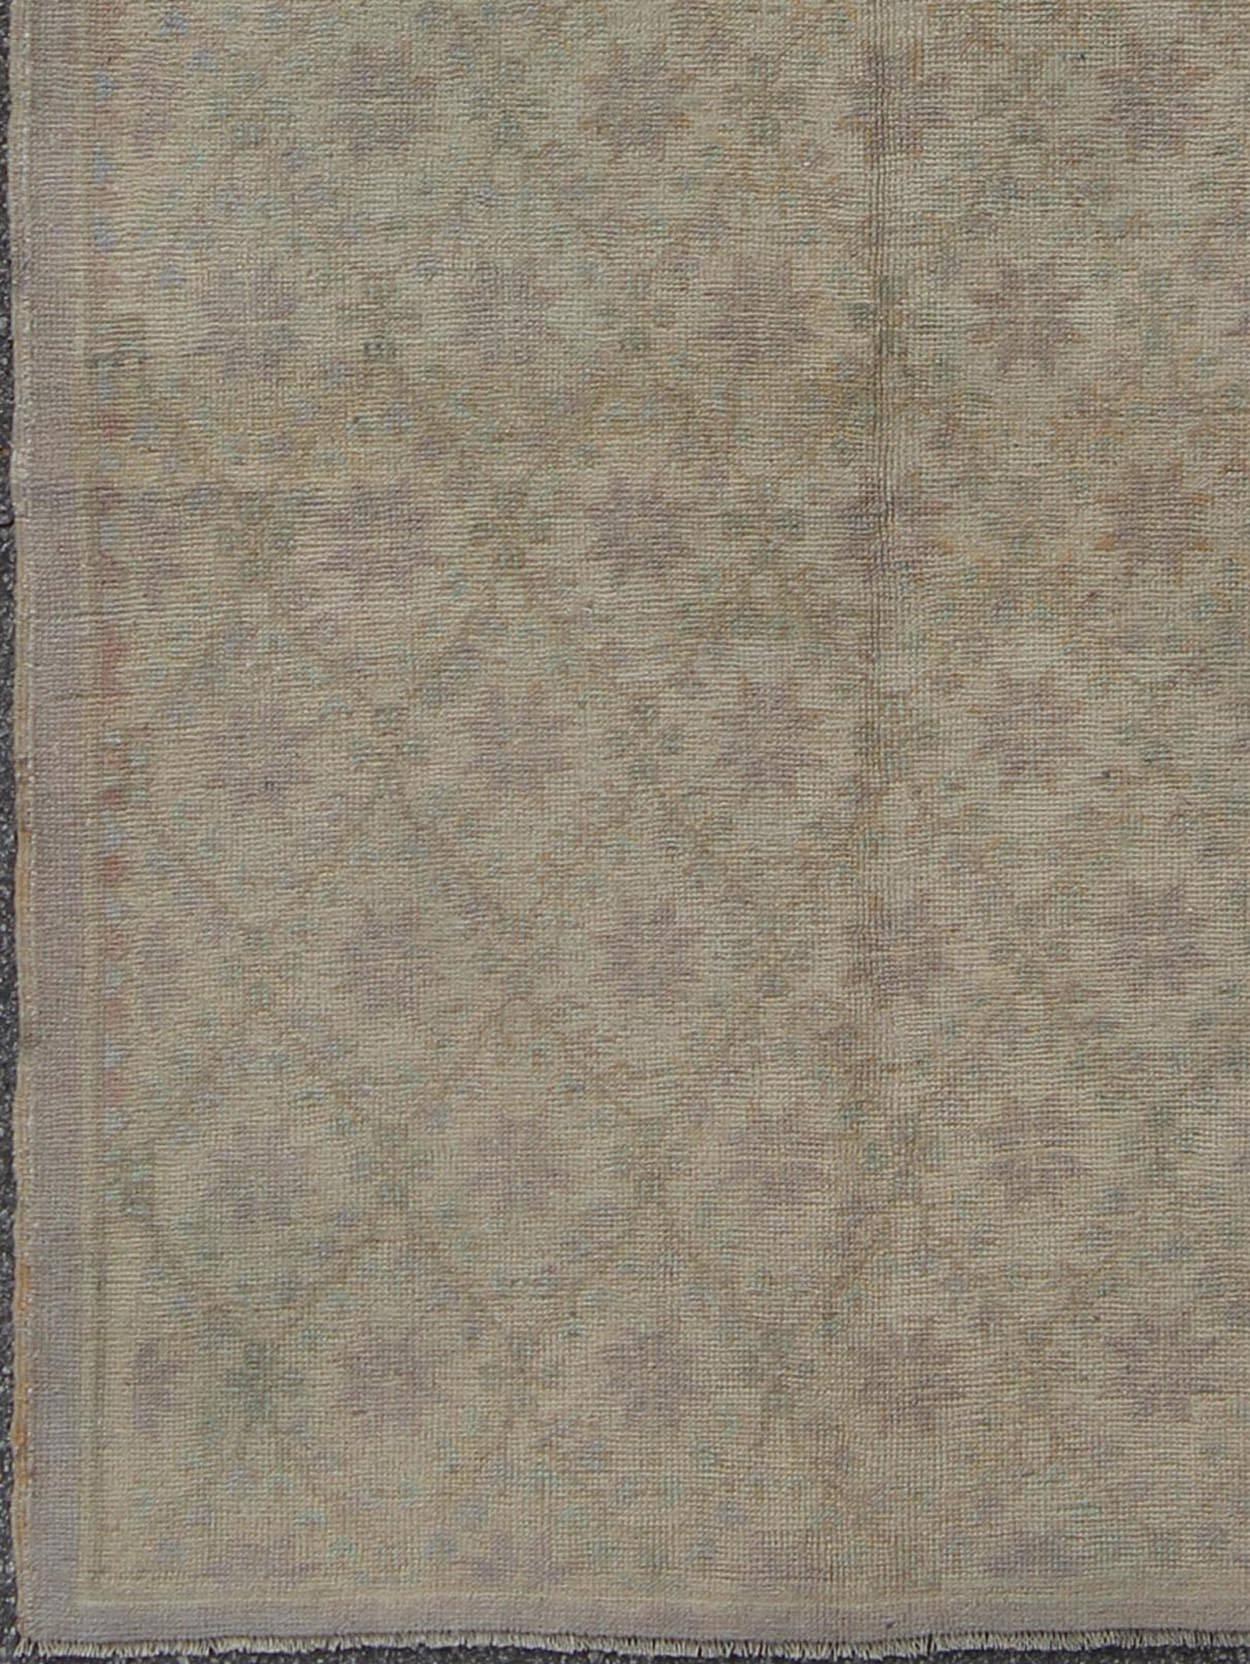 Ce tapis Oushak (vers le milieu du 20e siècle) présente un motif de mini-fleurs qui s'étend sur tout le champ central. Les couleurs comprennent diverses nuances de taupe et de gris. Les qualités du tapis sont renforcées par sa laine